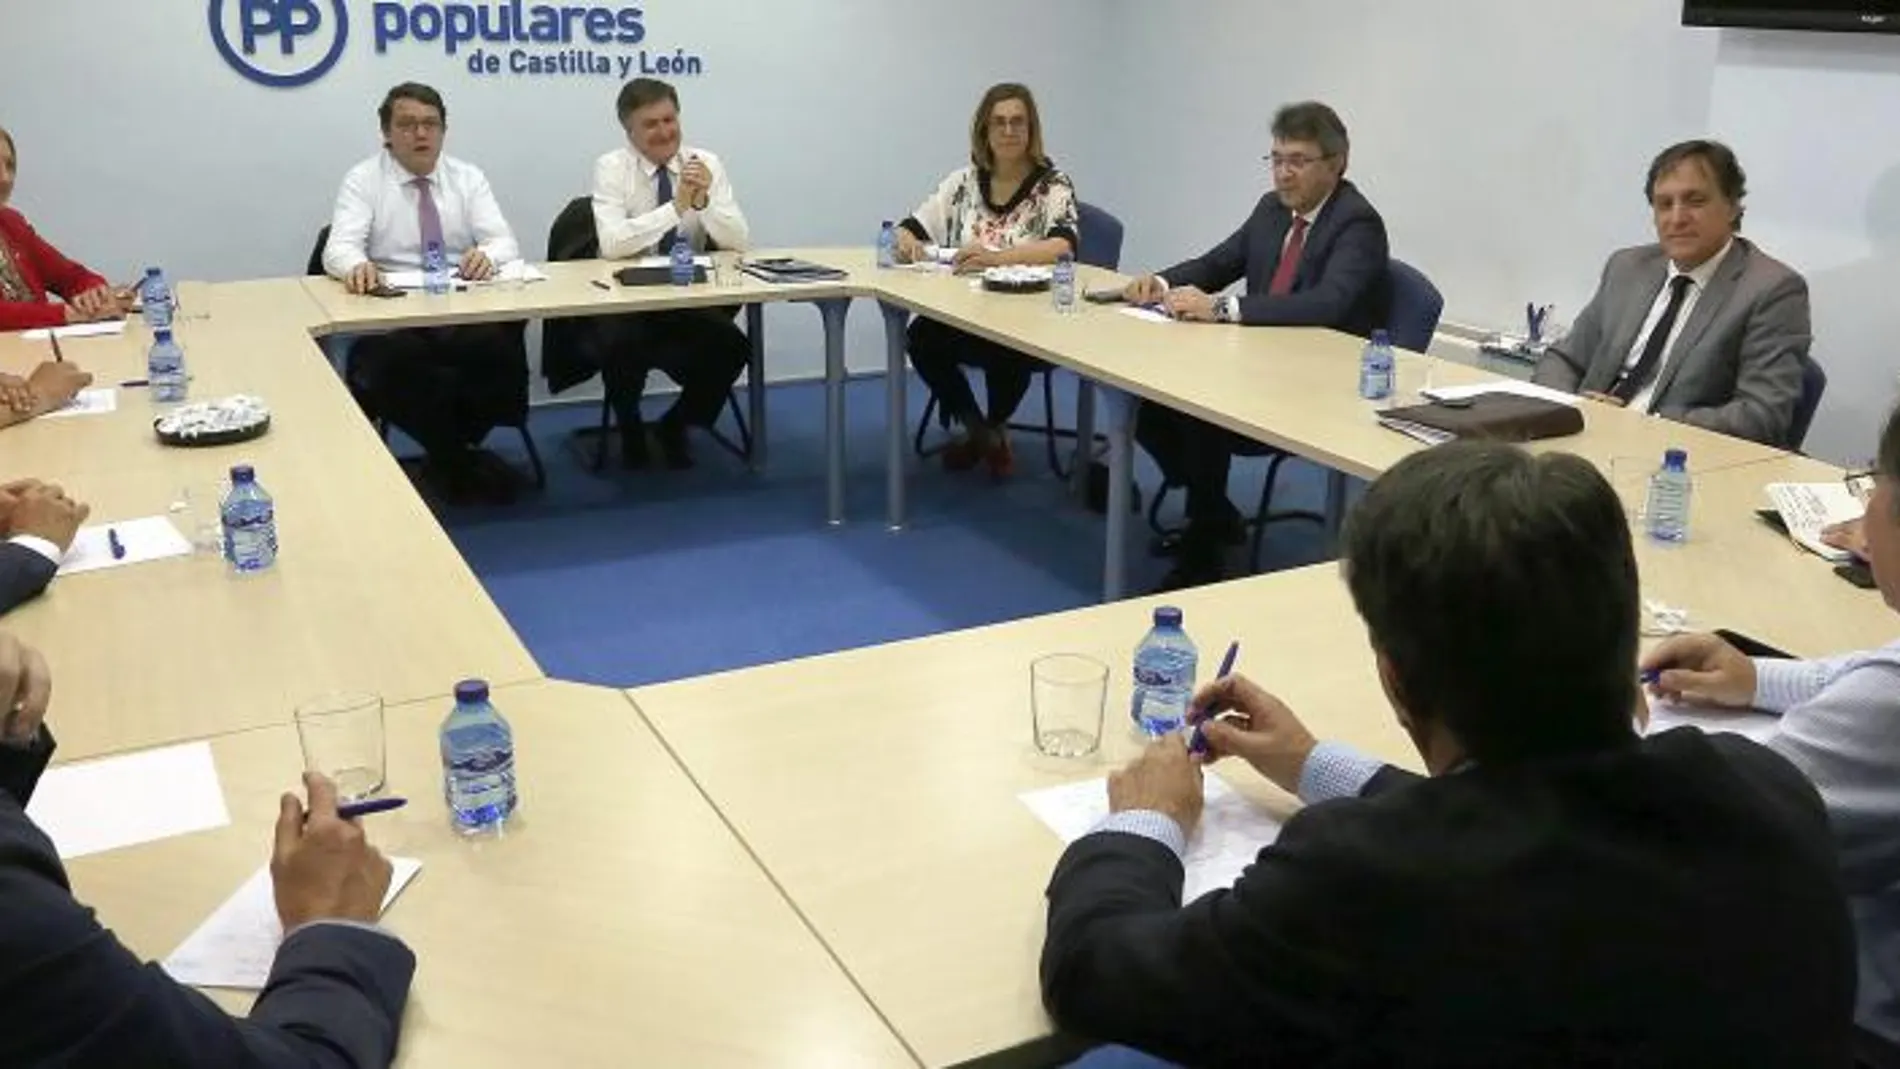 El presidente del PP de Castilla y León, Alfonso Fernández Mañueco, se reúne con los nueve dirigentes provinciales del partido junto al secretario general, Francisco Vázquez / Rubén cacho/Ical